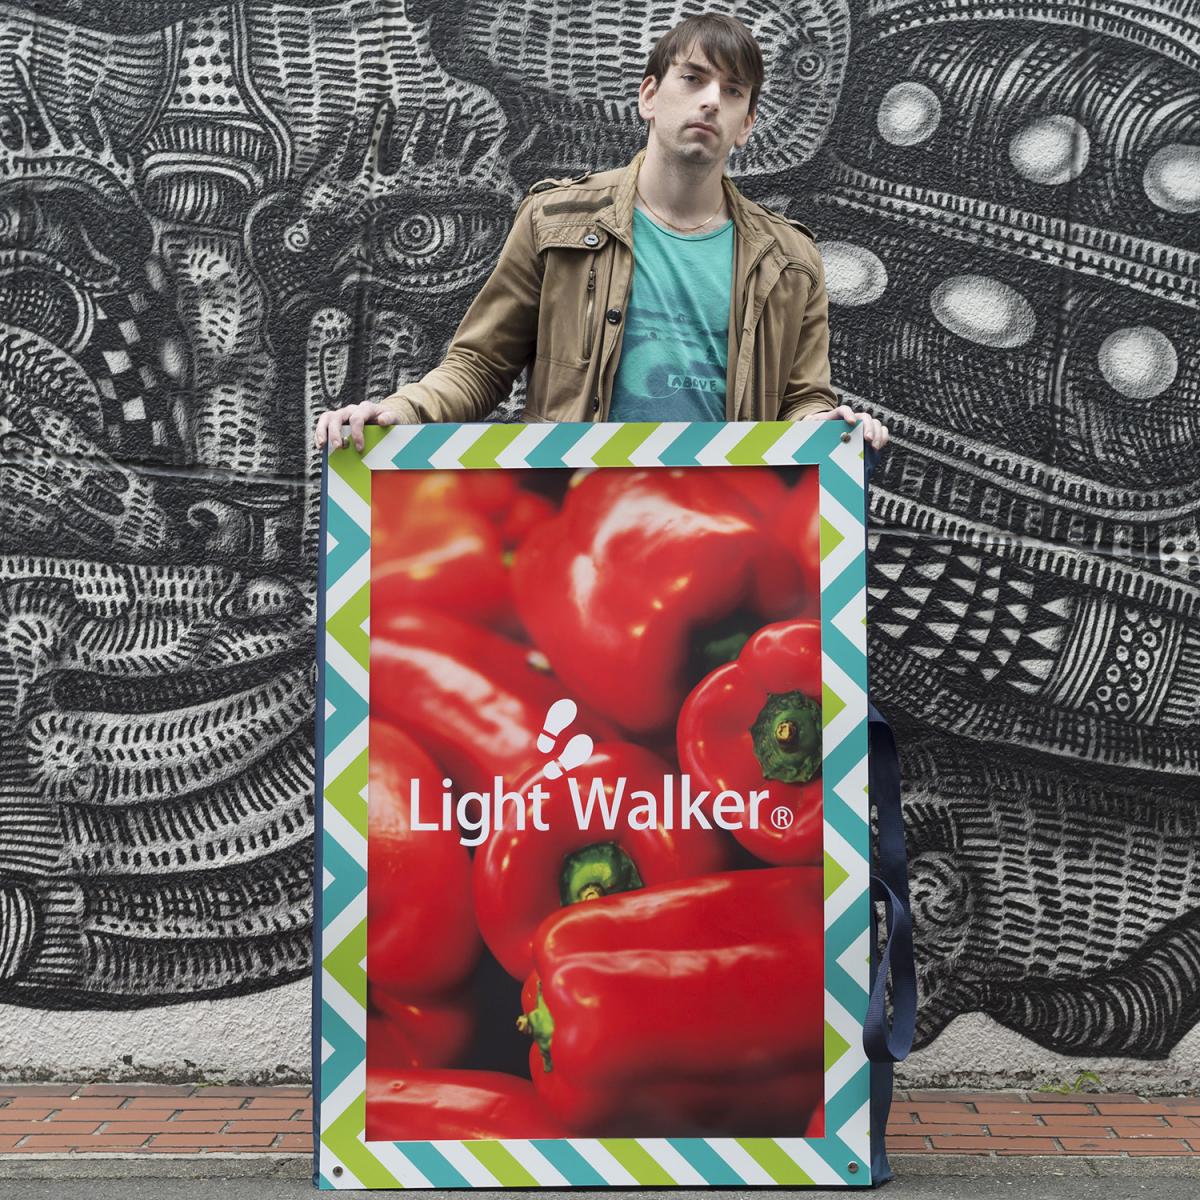 Light Walker,Light Walker is a ultra-light portable sign board with a LED backlit film poster.